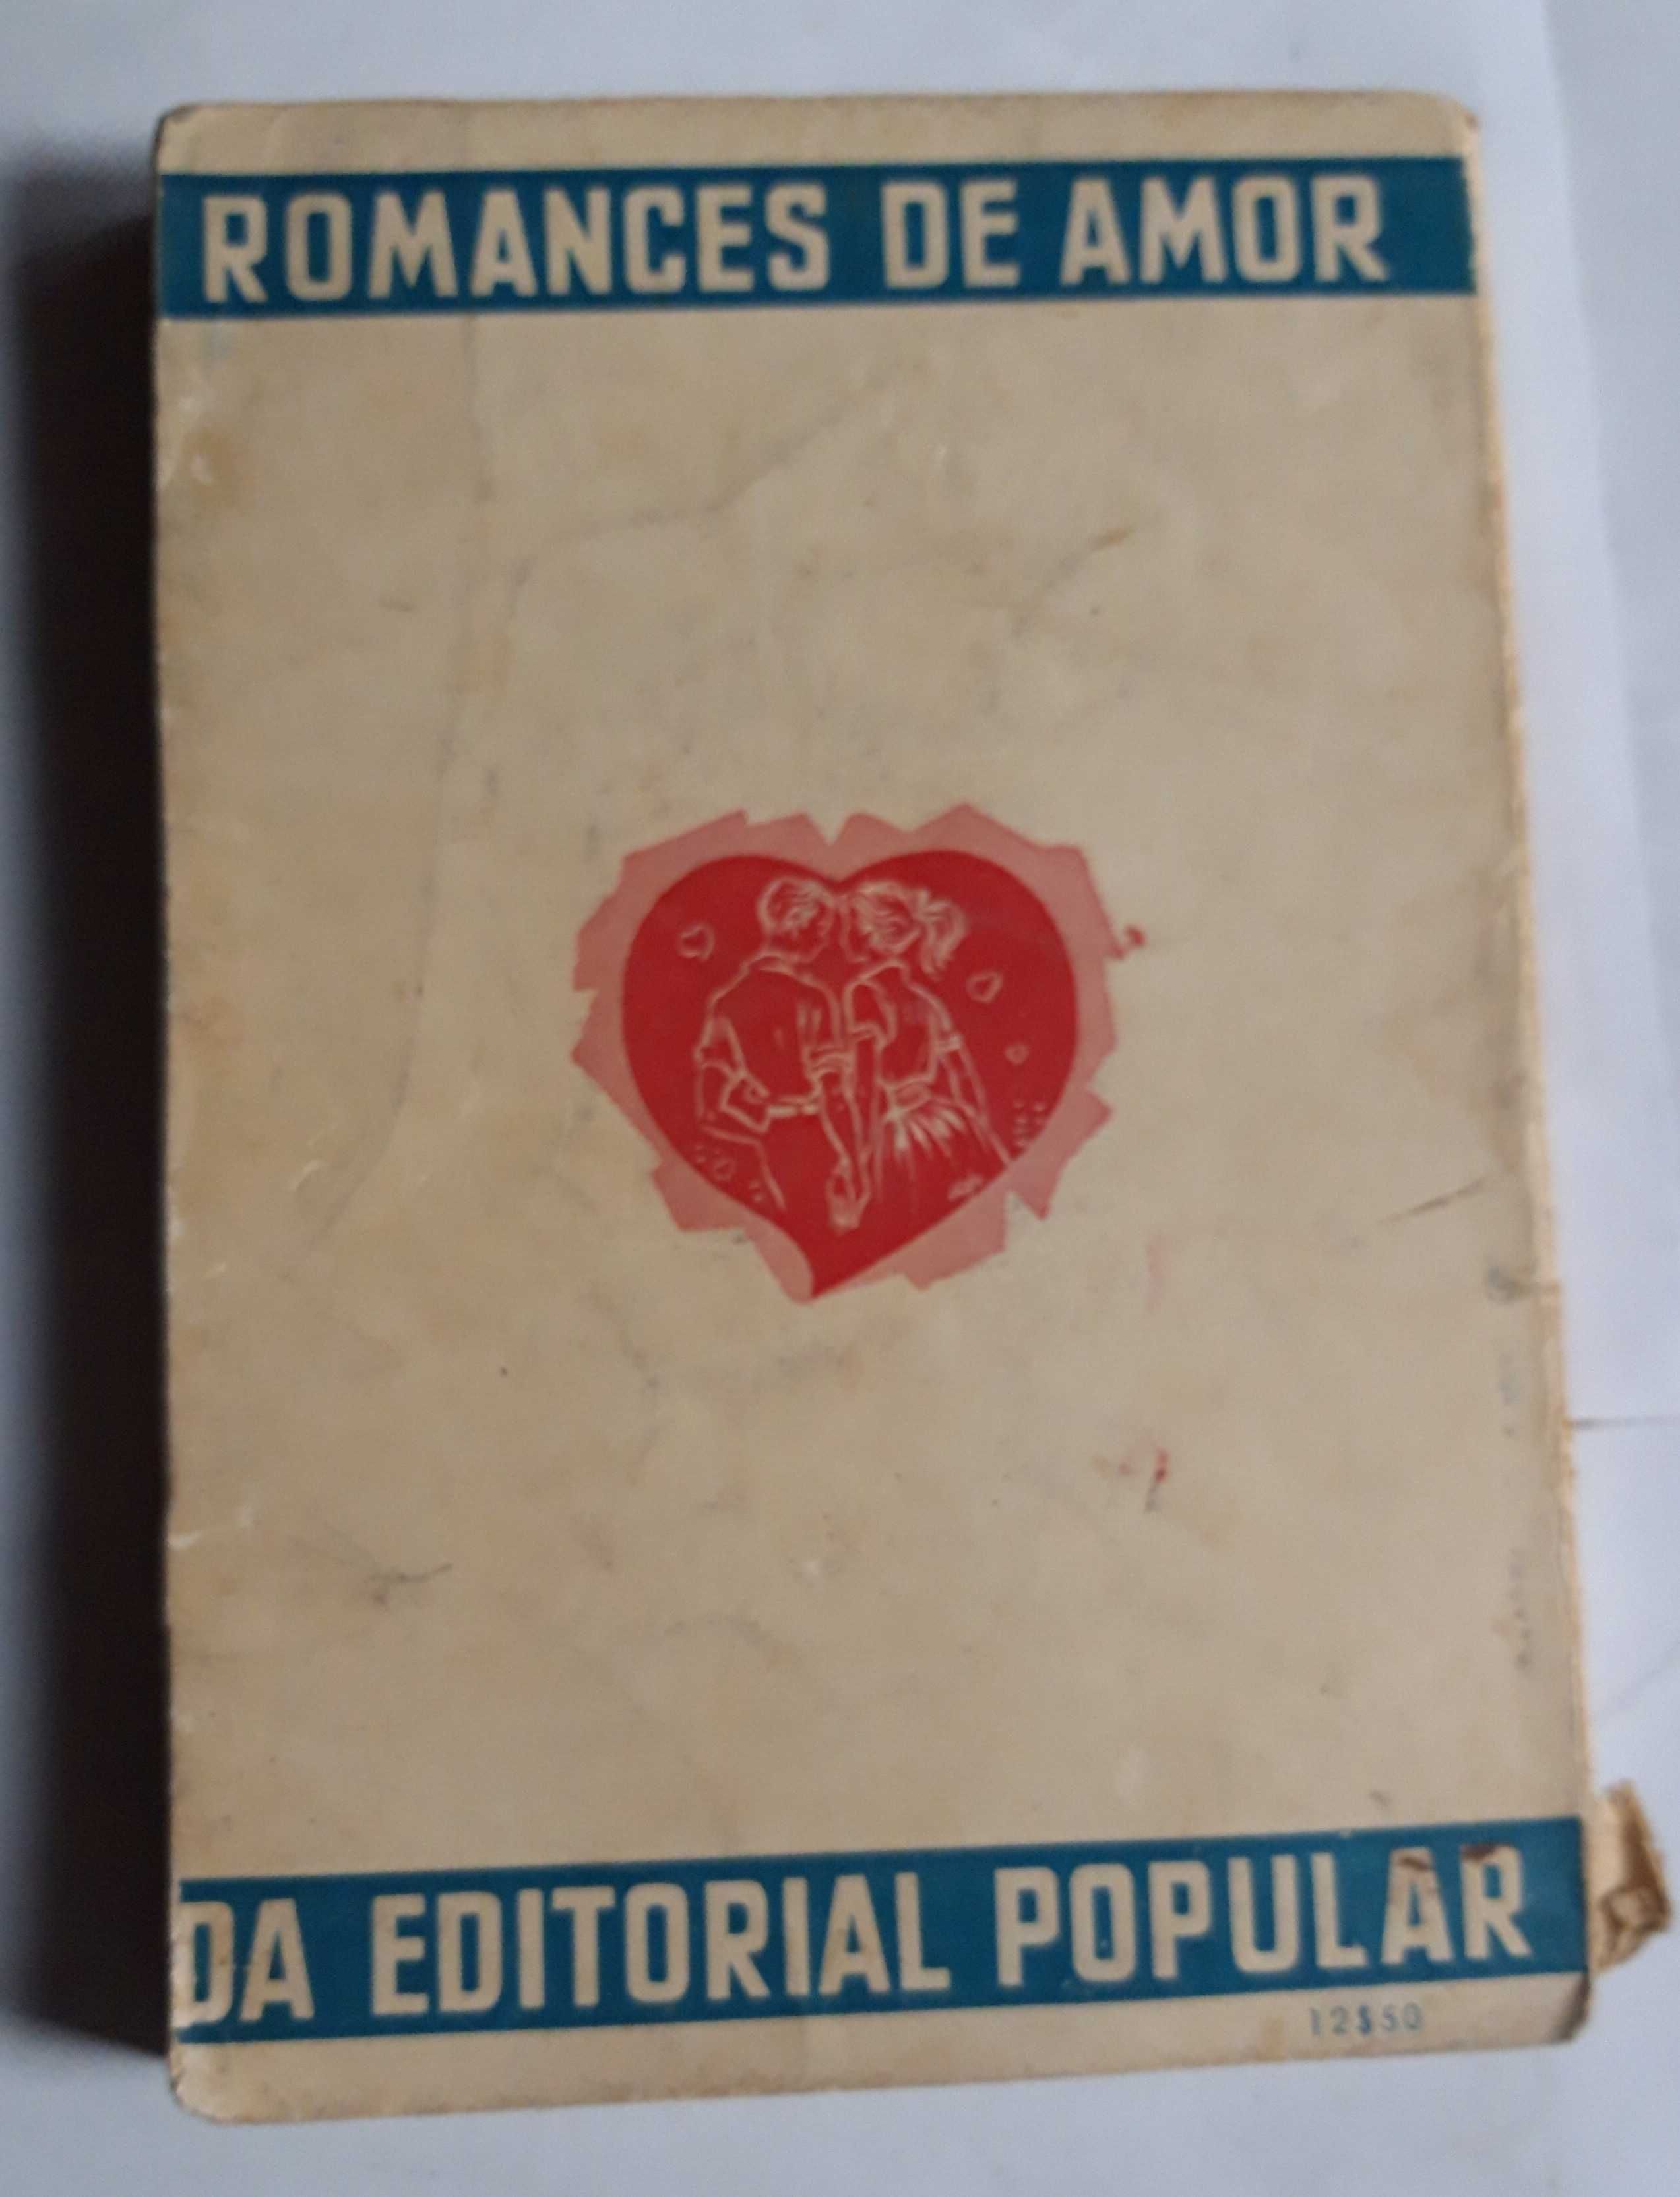 Livro- Ref CxC - Françoise Le Brillet - Sílvia Não Pensou no Amor